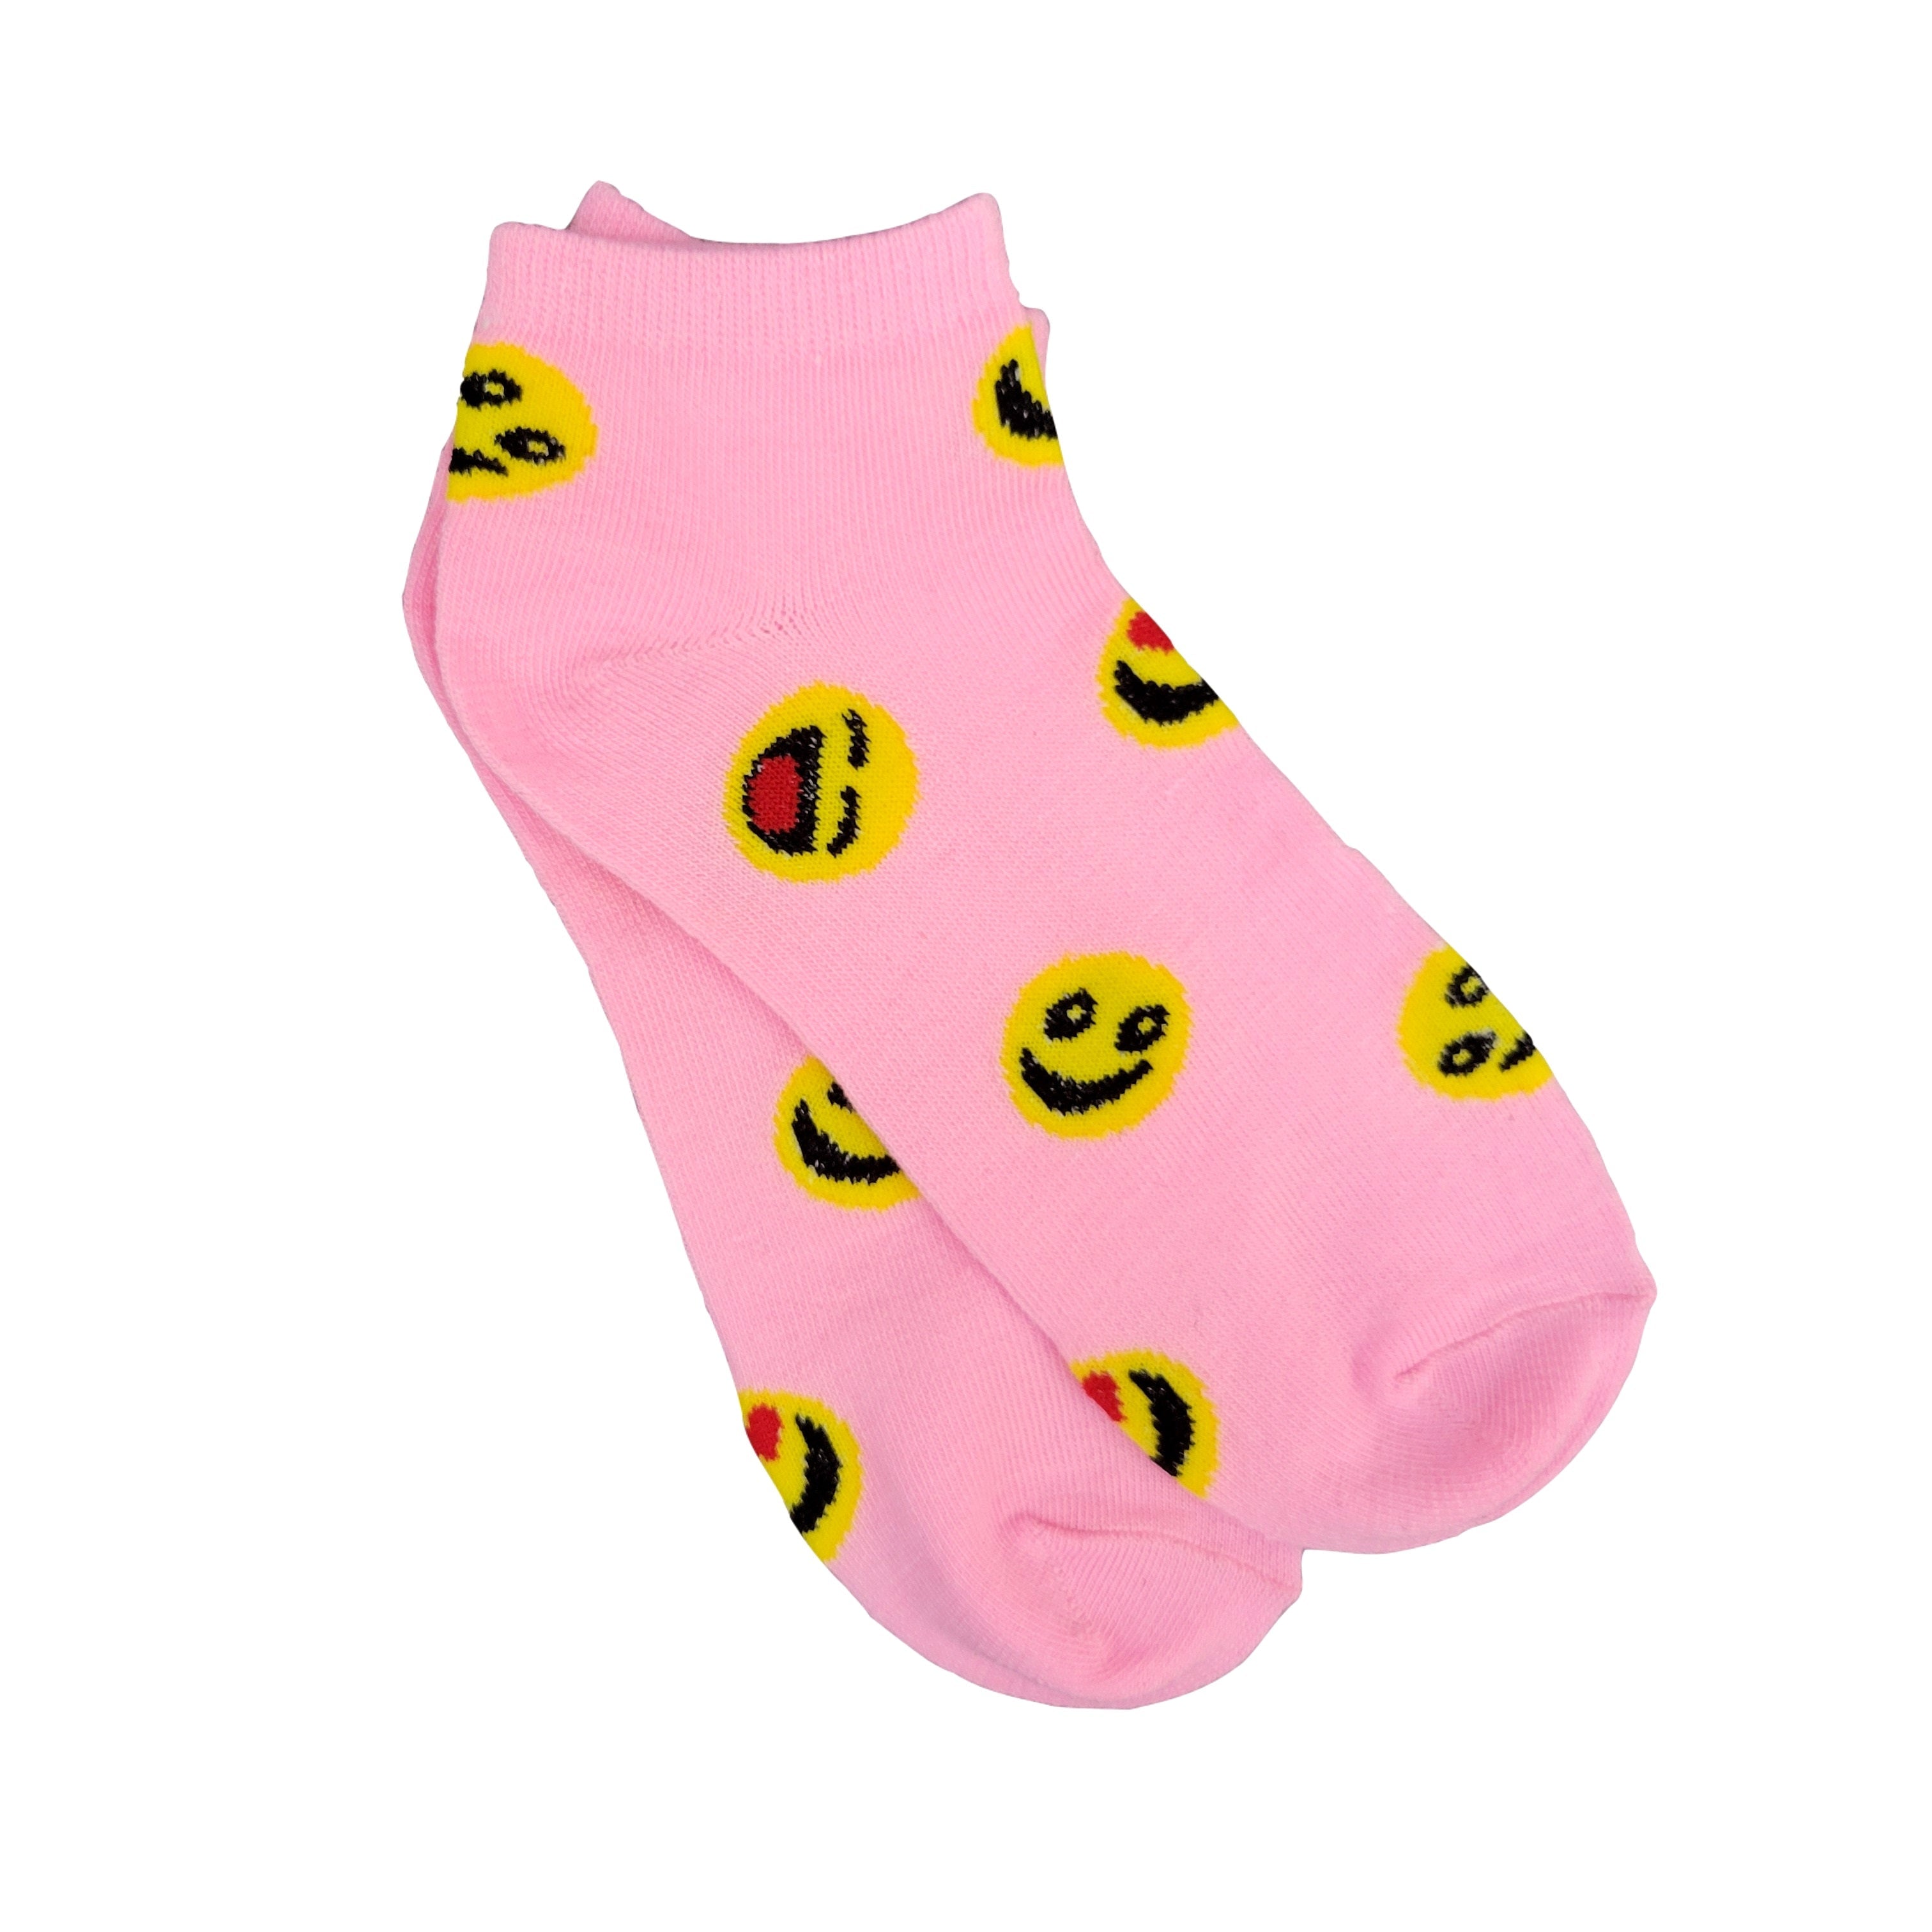 Emoji Ankle Socks (Adult Medium)